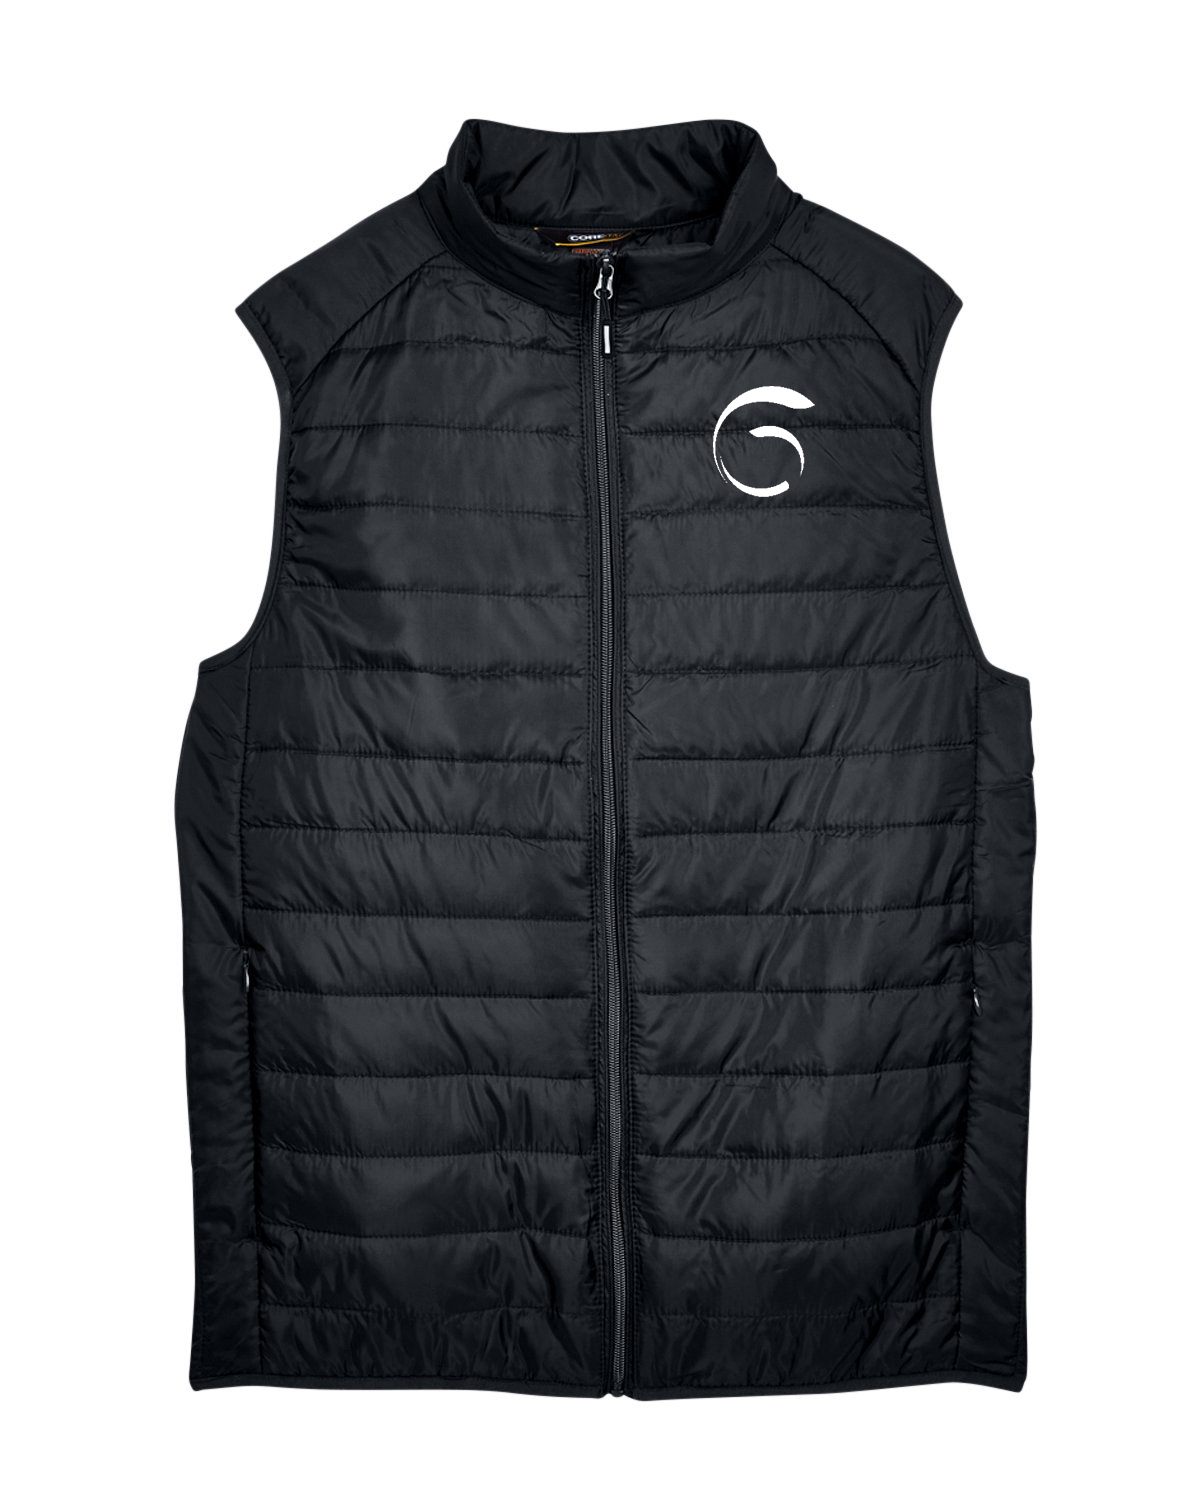 CORE365 Men's Prevail Packable Puffer Vest (Add'l Color Options)